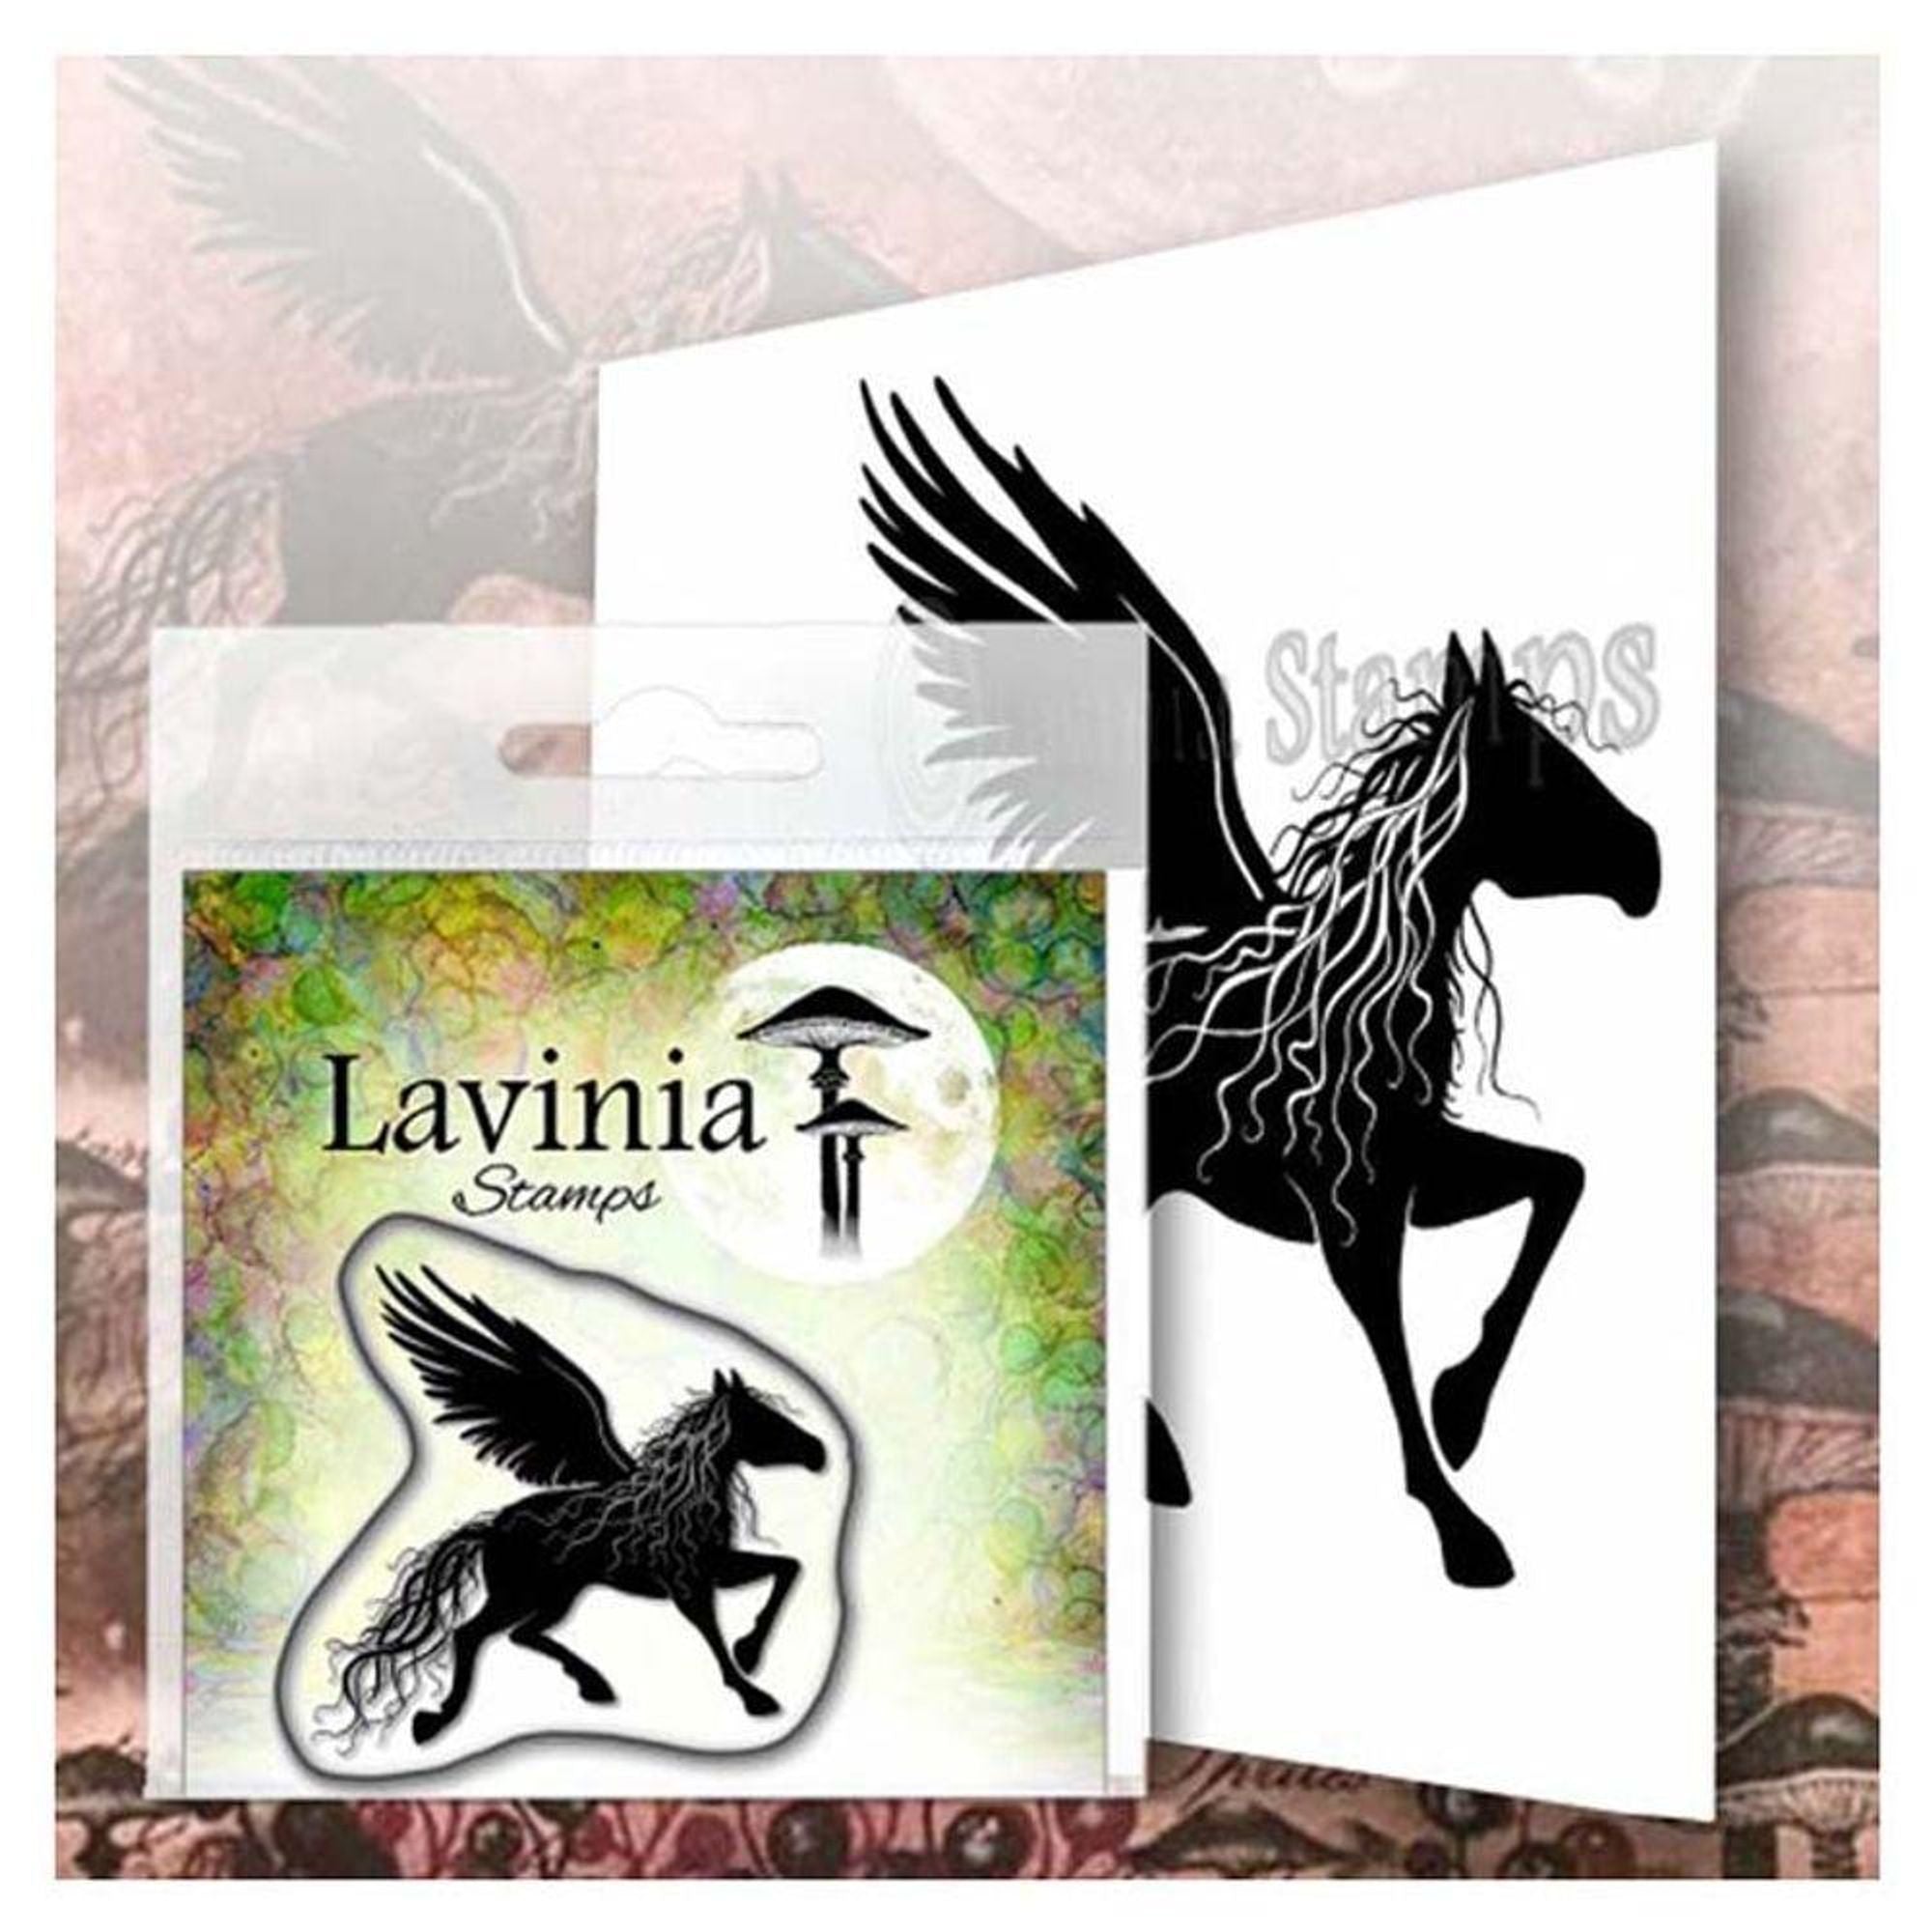 Lavinia Stamp - Sirlus